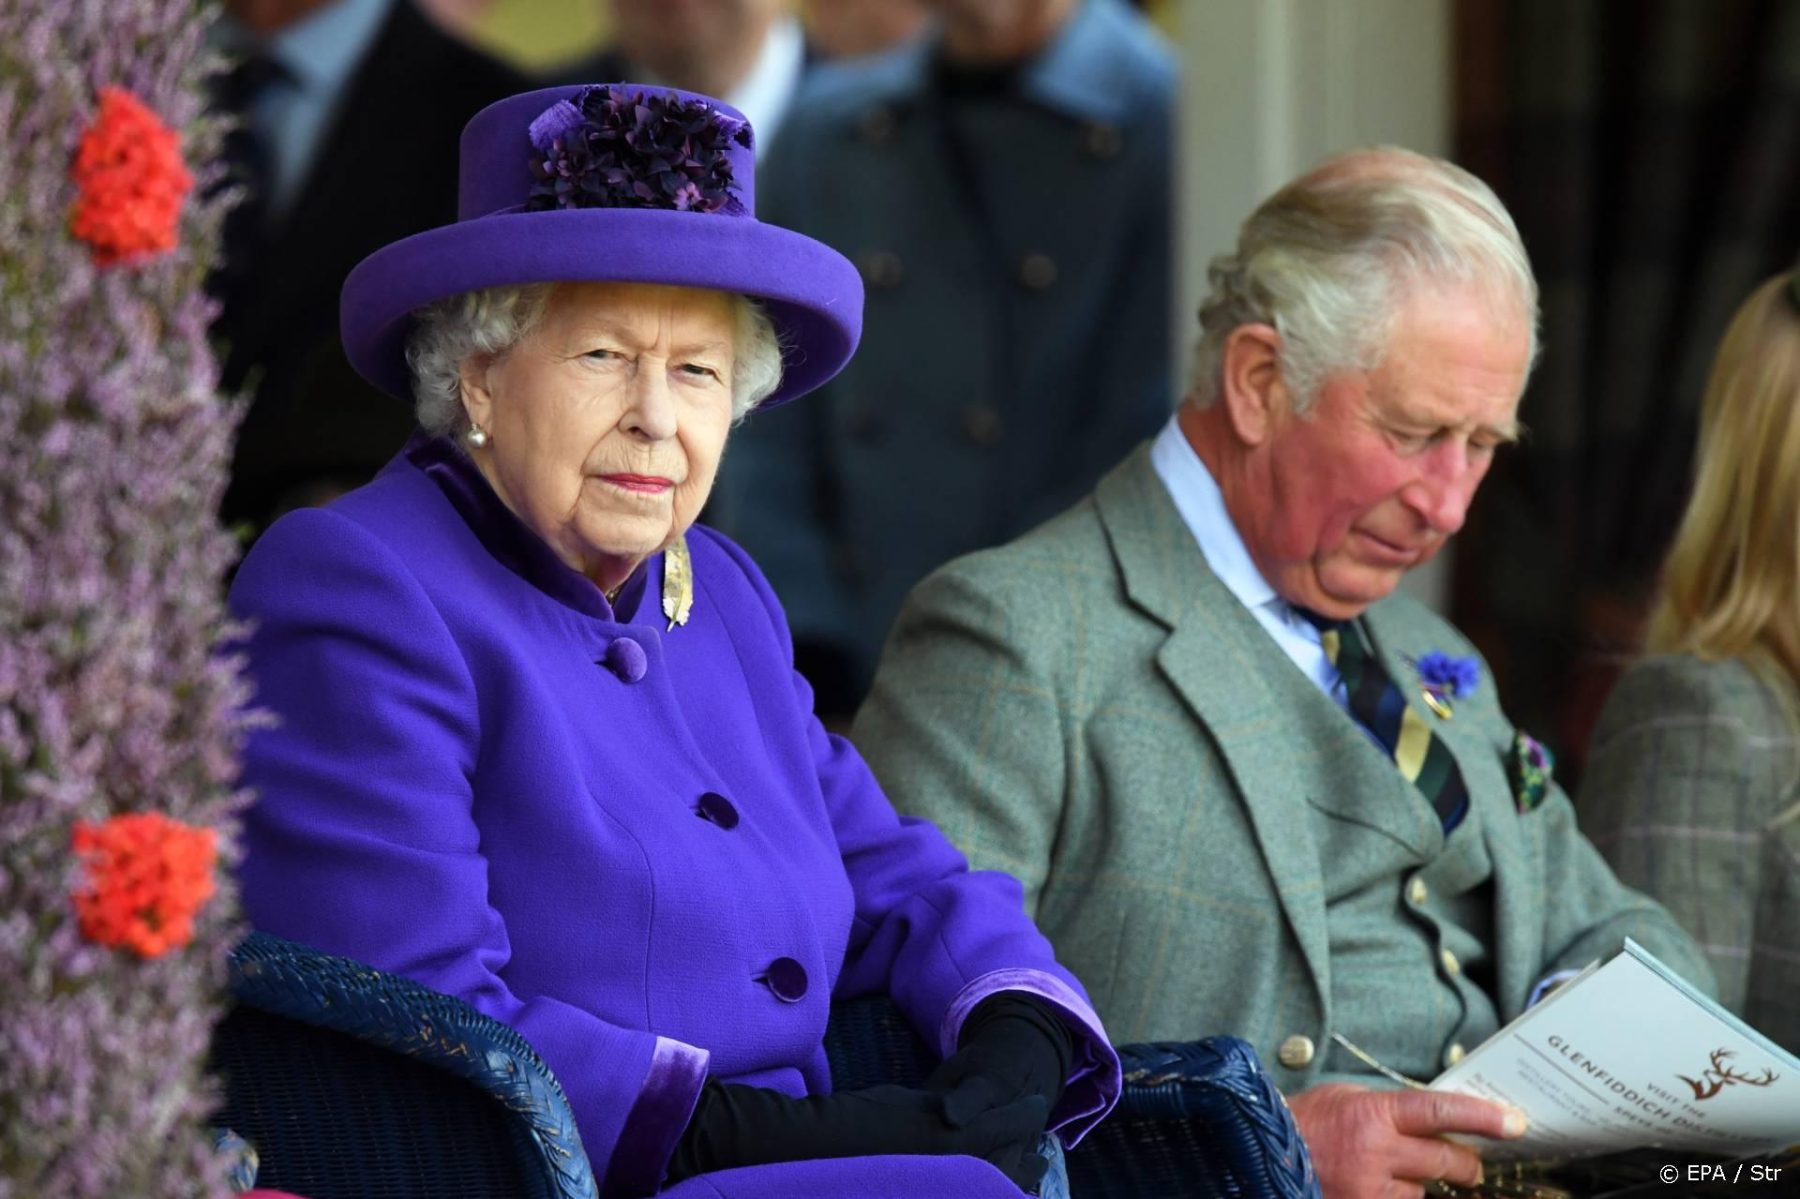 Koningin Elizabeth voortaan alleen nog met familielid naar verplichtingen'